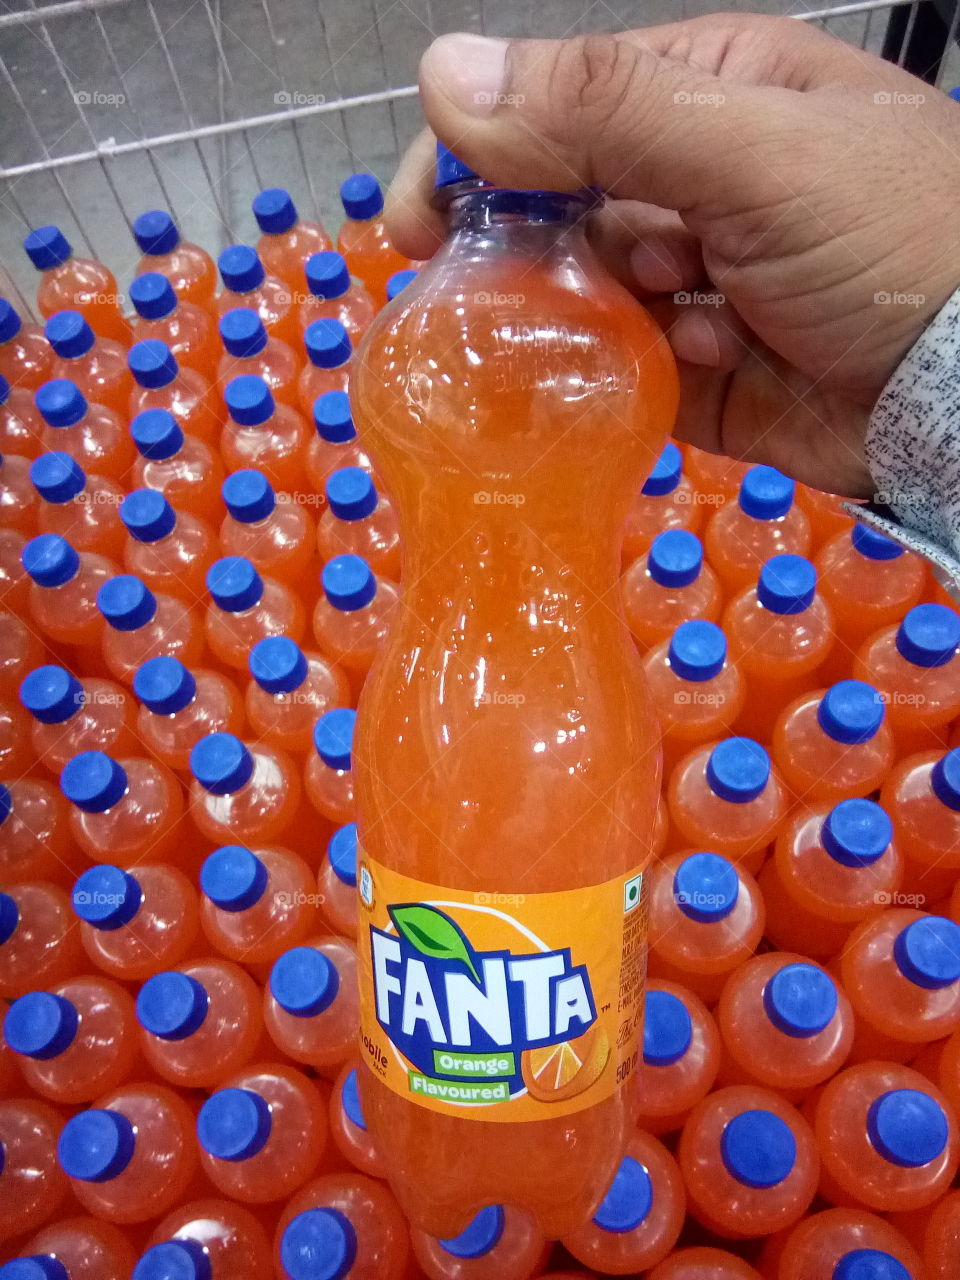 FANTA orange taste cold drink.